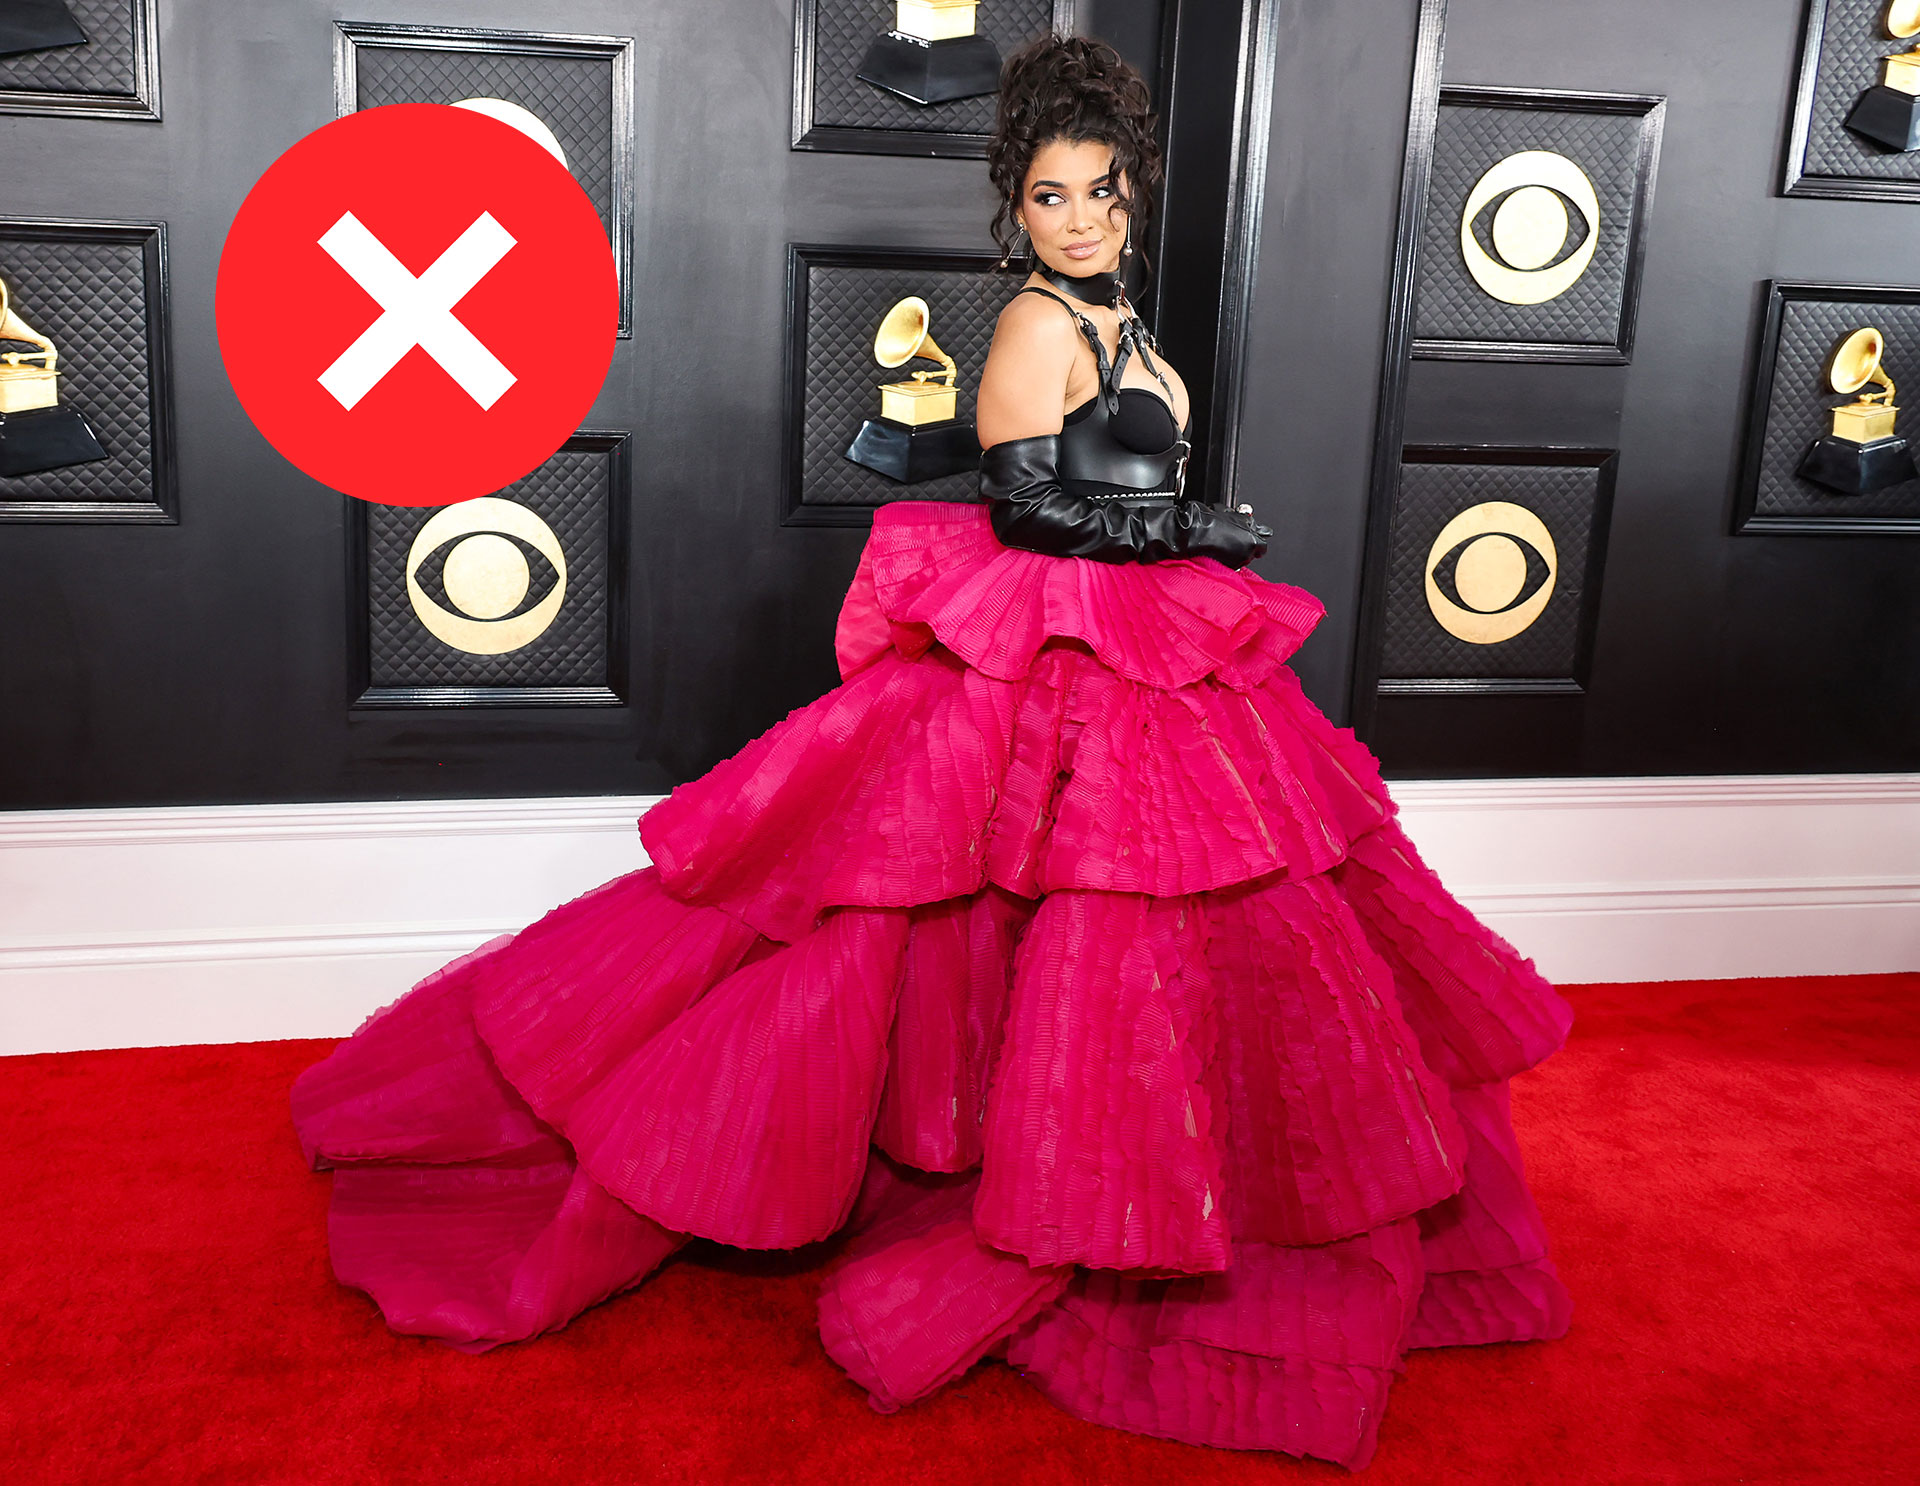 La artista musical Hannah Monds llegó a los Grammys con un look rojo y negro con detalles en volado en un vestido que dominó la escena (AFP)